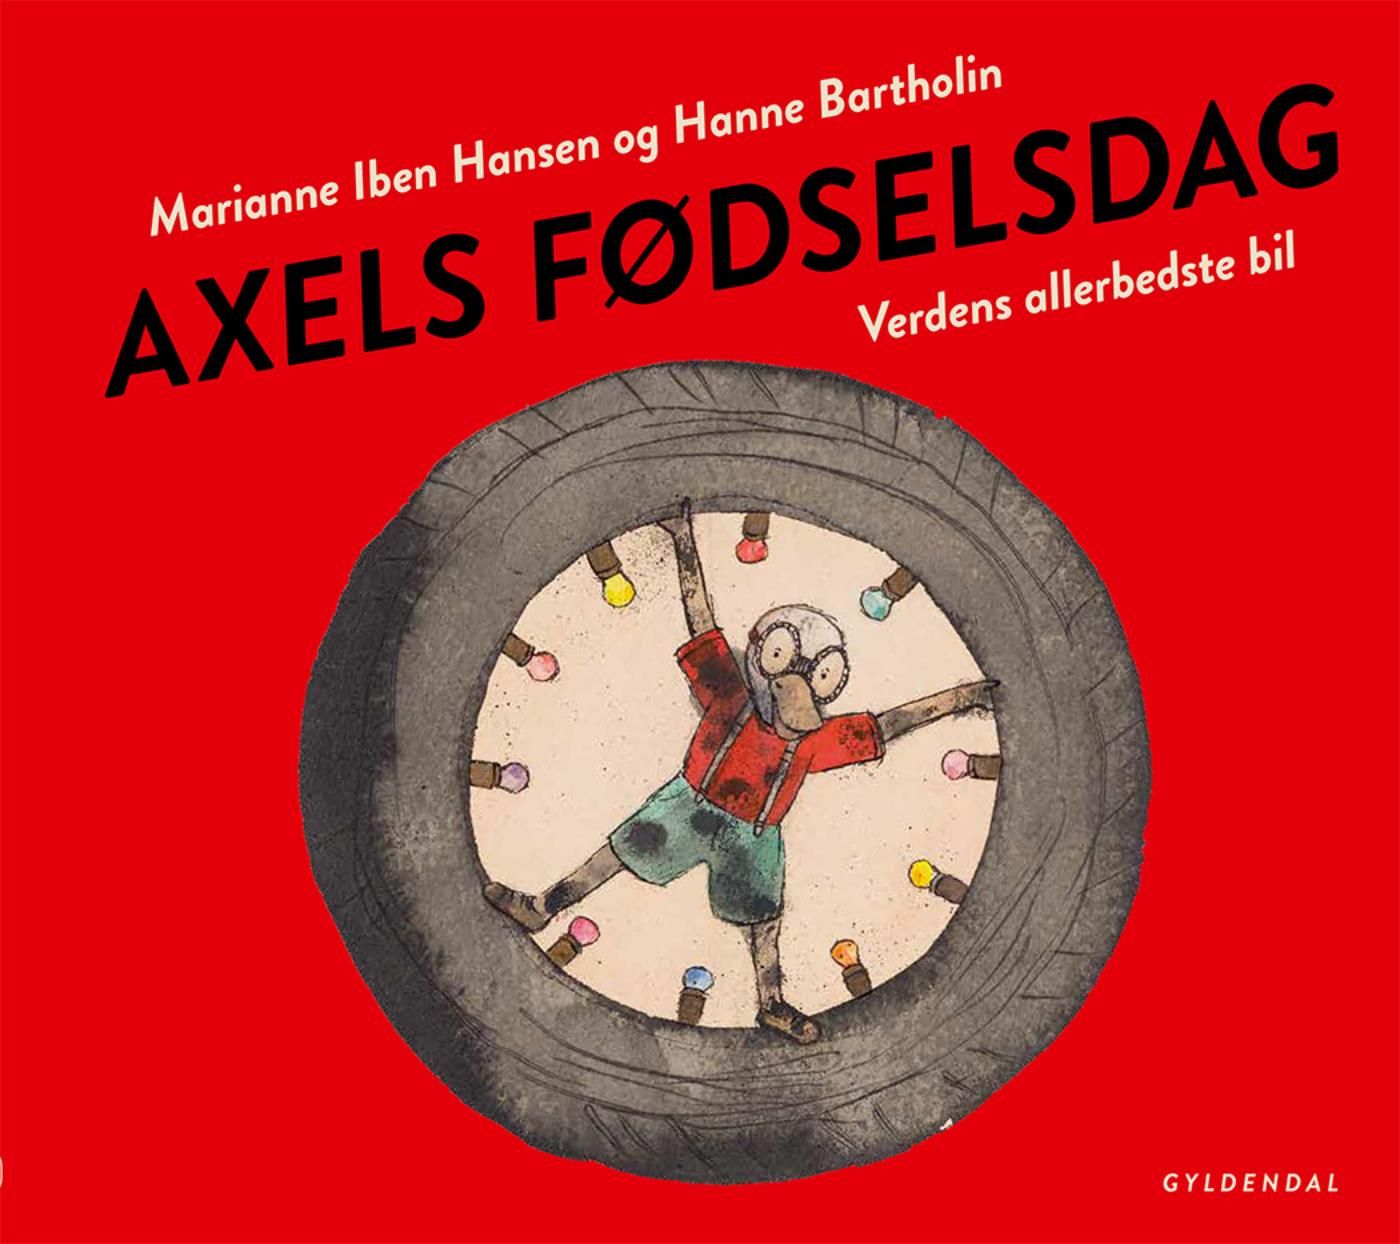 Axels fødselsdag. Verdens allerbedste bil - Lyt&læs, e-bog af Marianne Iben Hansen